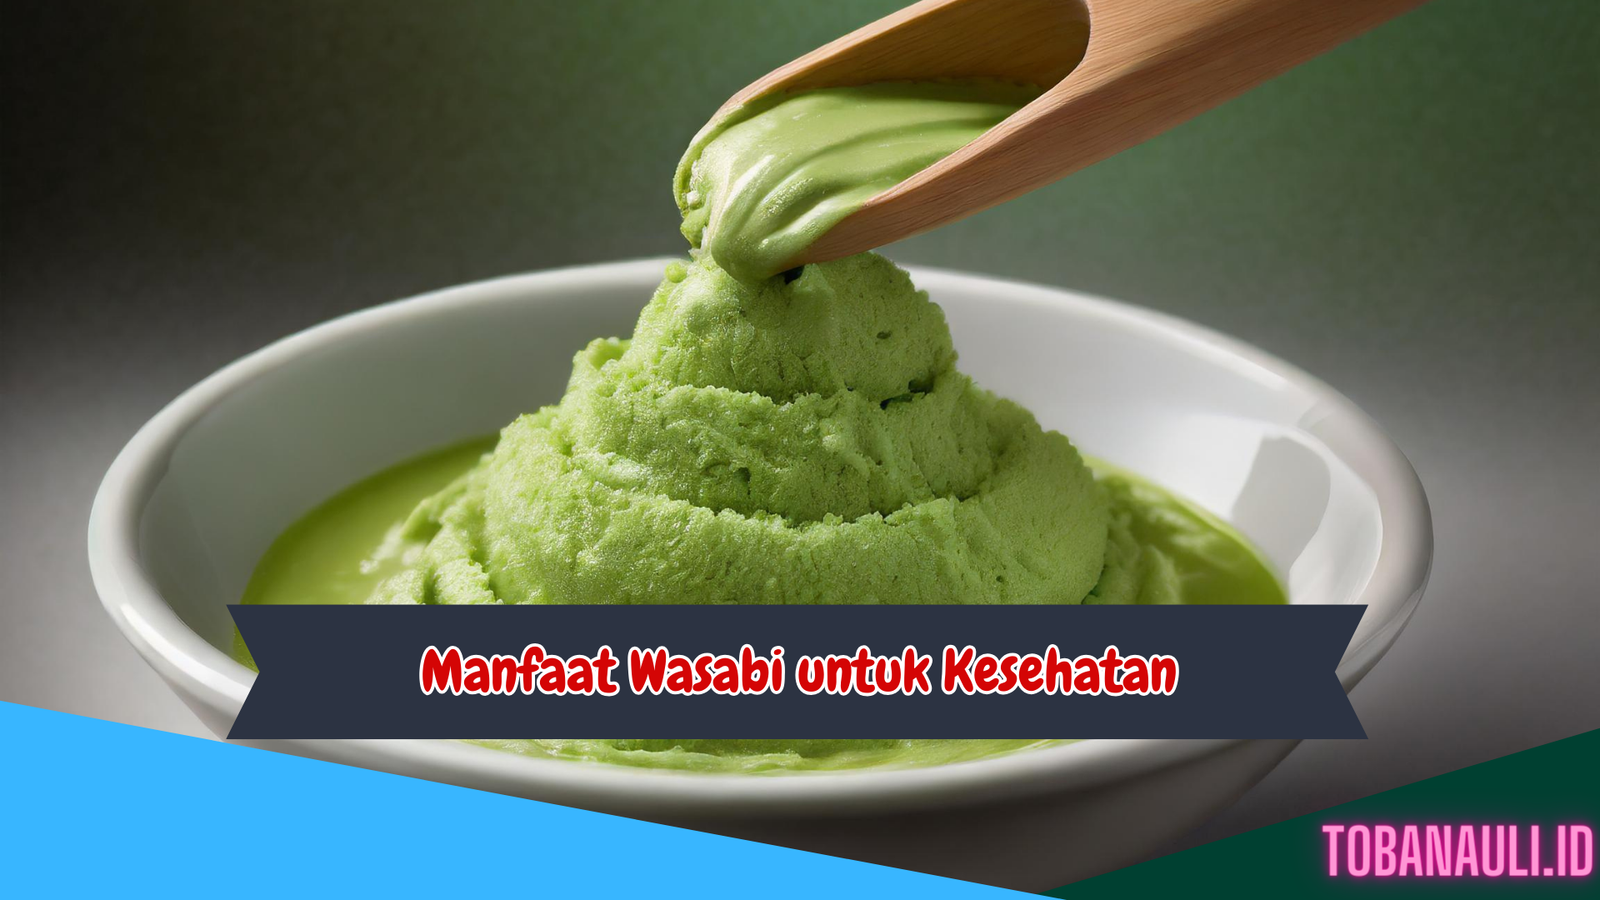 Manfaat Wasabi untuk Kesehatan